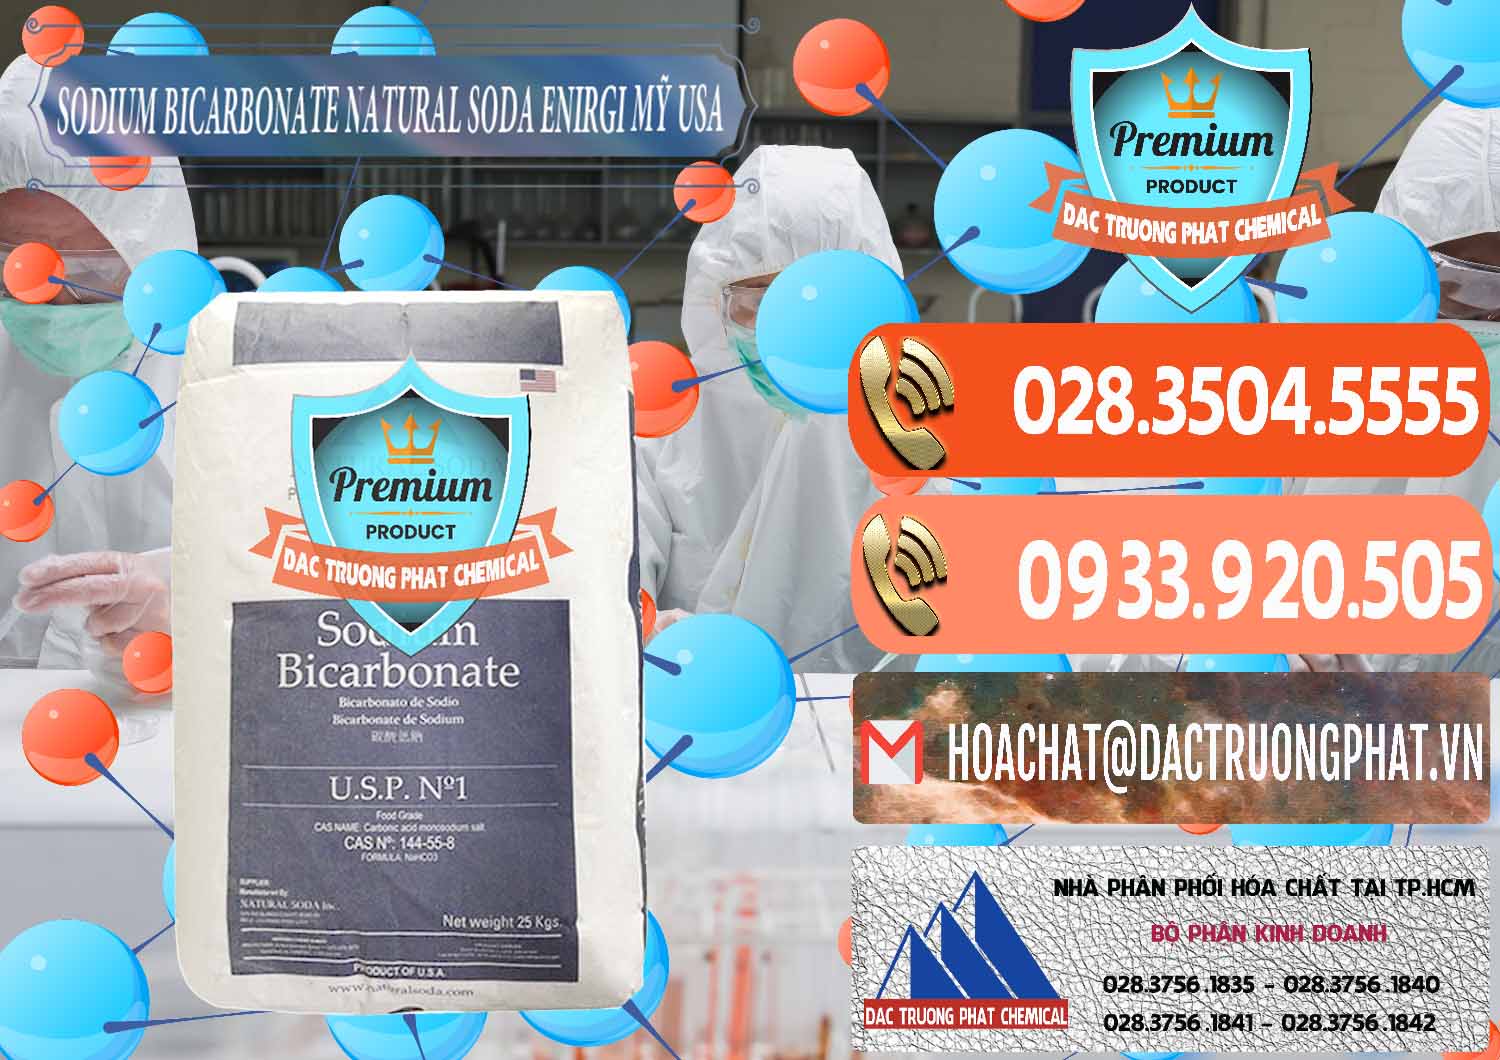 Cty chuyên nhập khẩu & bán Sodium Bicarbonate – Bicar NaHCO3 Food Grade Natural Soda Enirgi Mỹ USA - 0257 - Cung cấp _ phân phối hóa chất tại TP.HCM - hoachatmientay.com